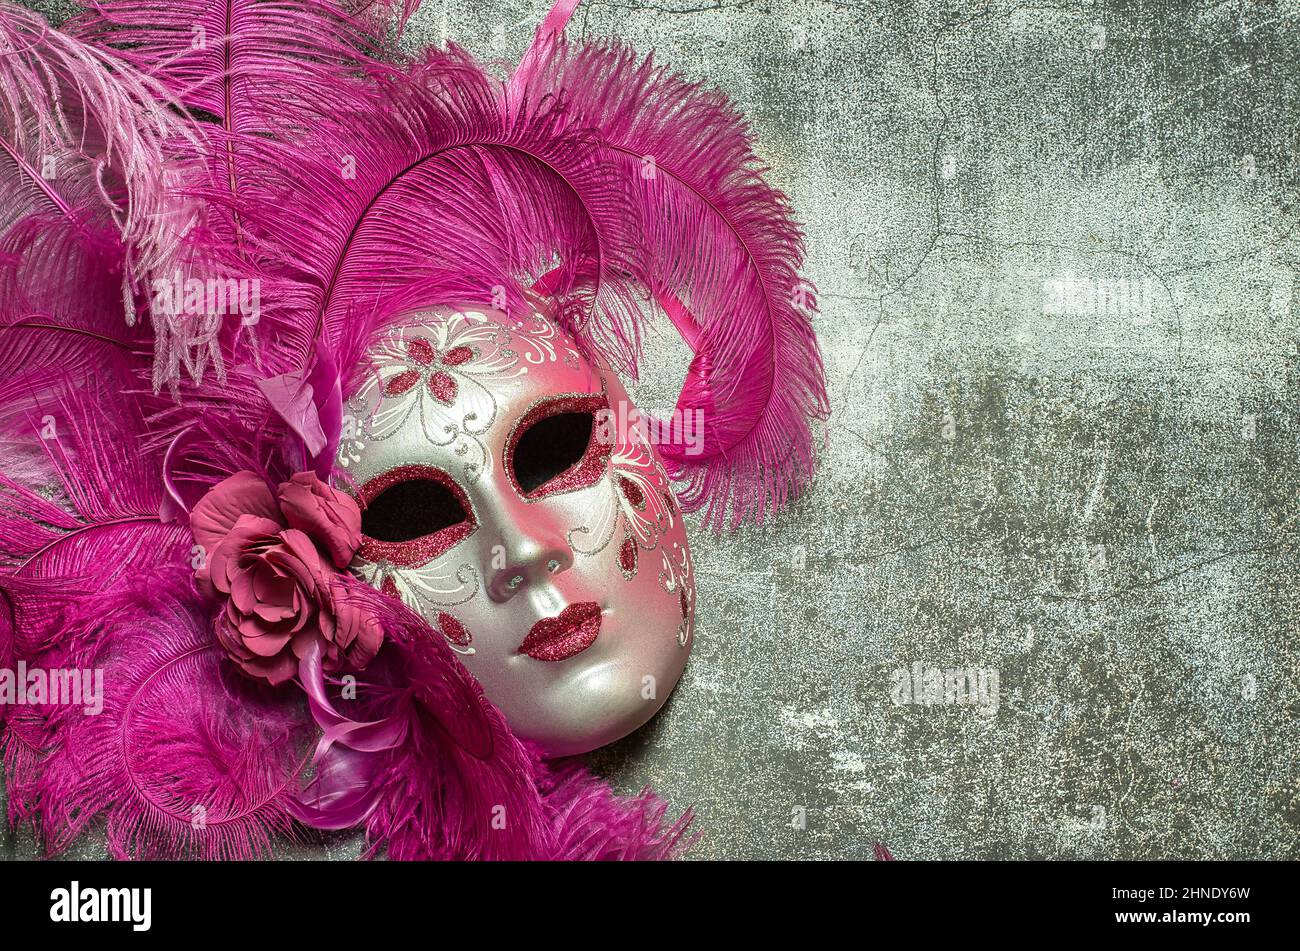 Masque de carnaval fait main à venise. Le masque est fait de papier mâché  et représente le visage d'une femme, est de couleur rose et décoré de  plumes Photo Stock - Alamy